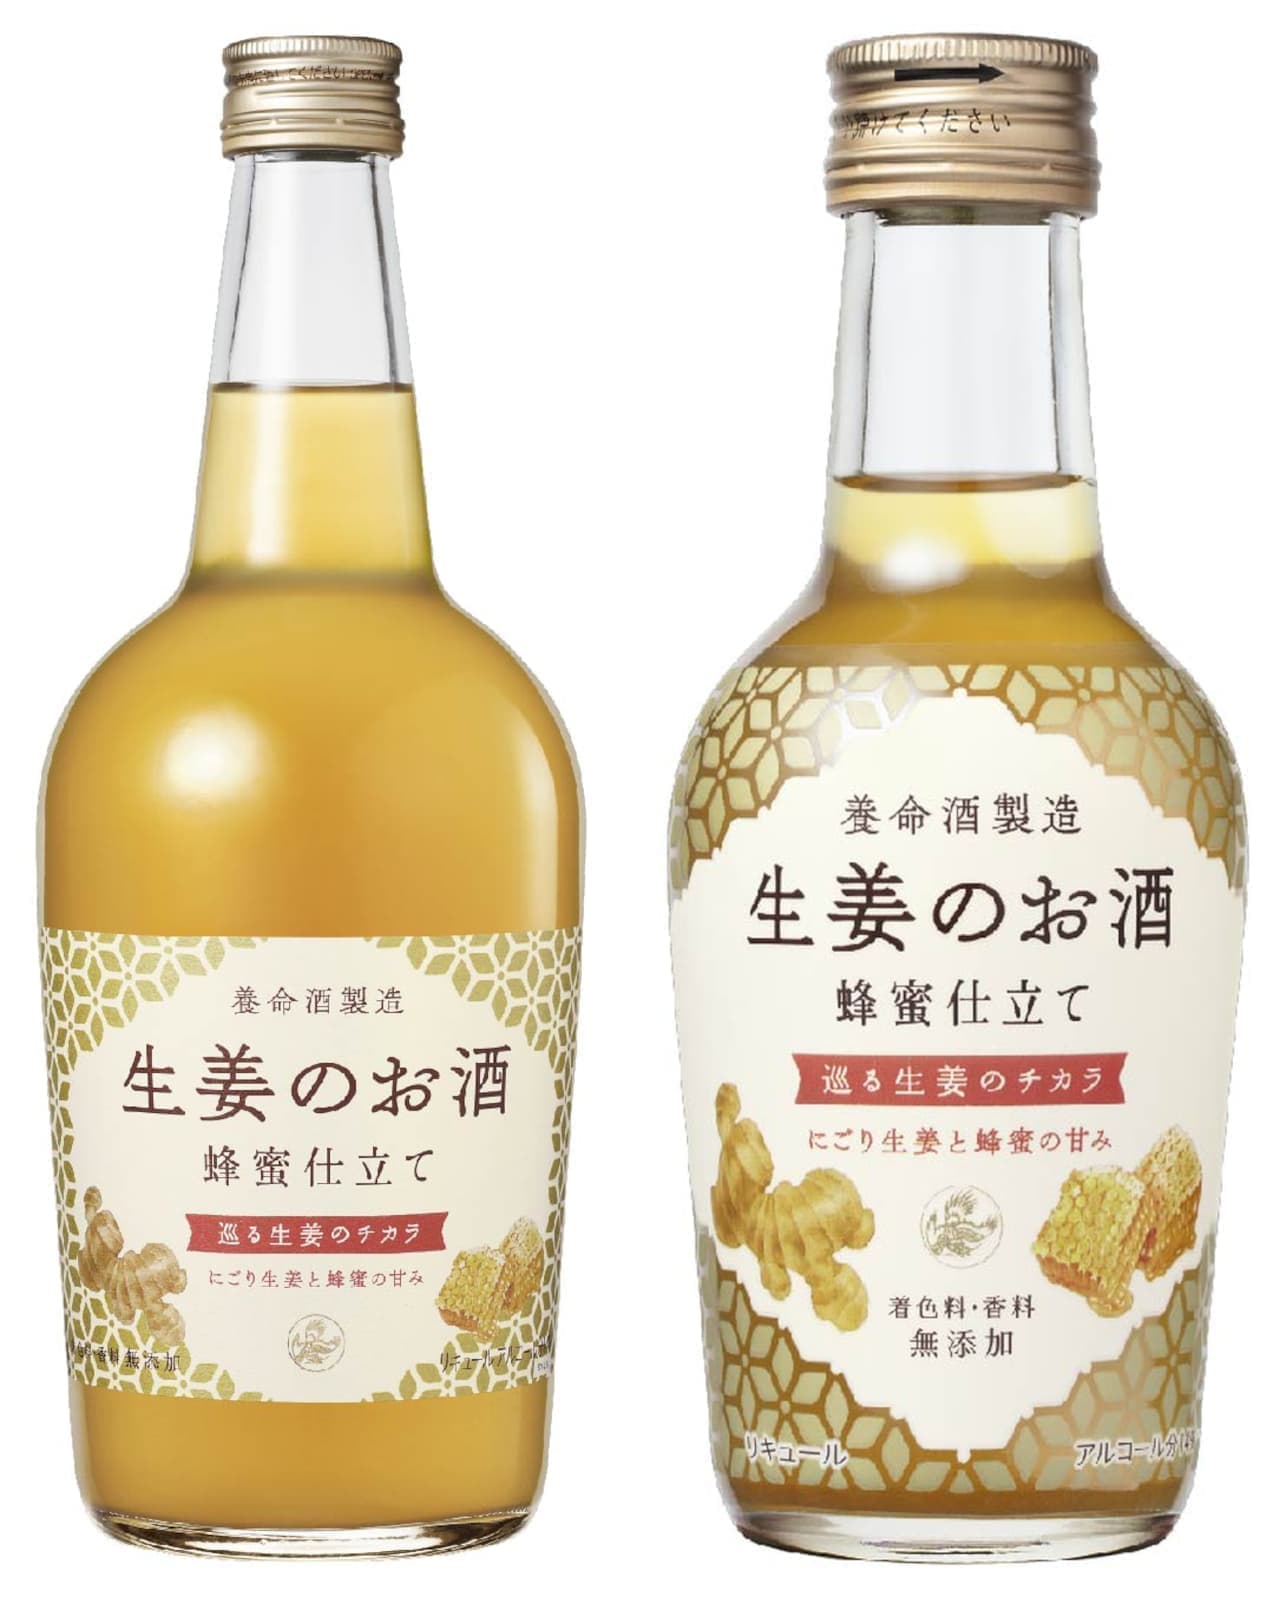 From Yomeishu to "Ginger Sake"